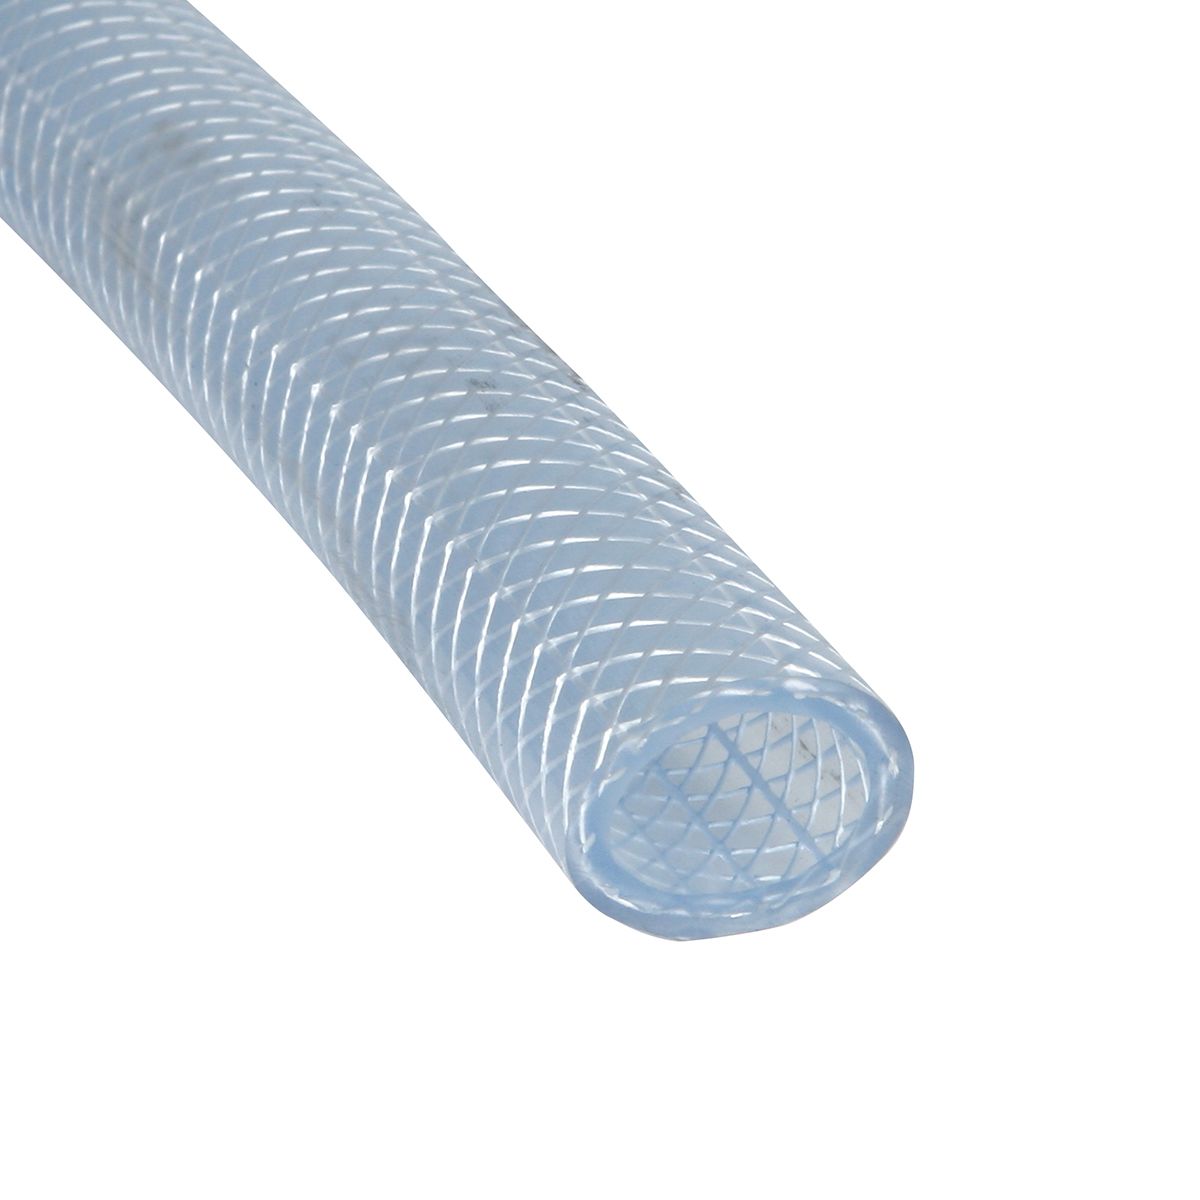 1.5" x 5' Flexible Industrial PVC Tubing Heavy Clear braided Hose" w barb adapt 